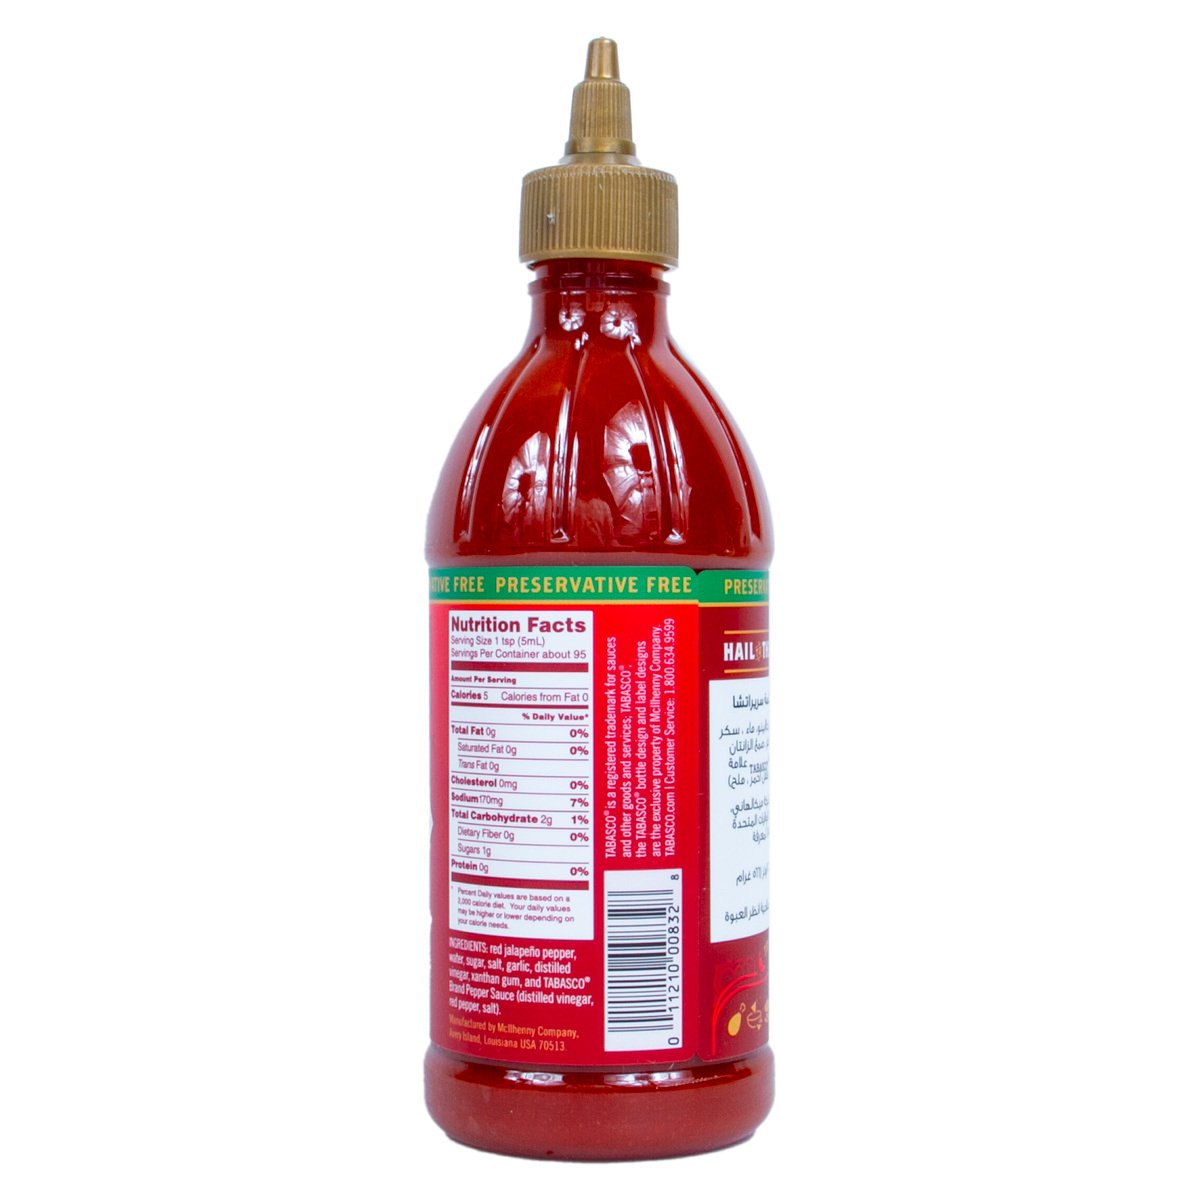 Tabasco Sriracha Sauce 566 g